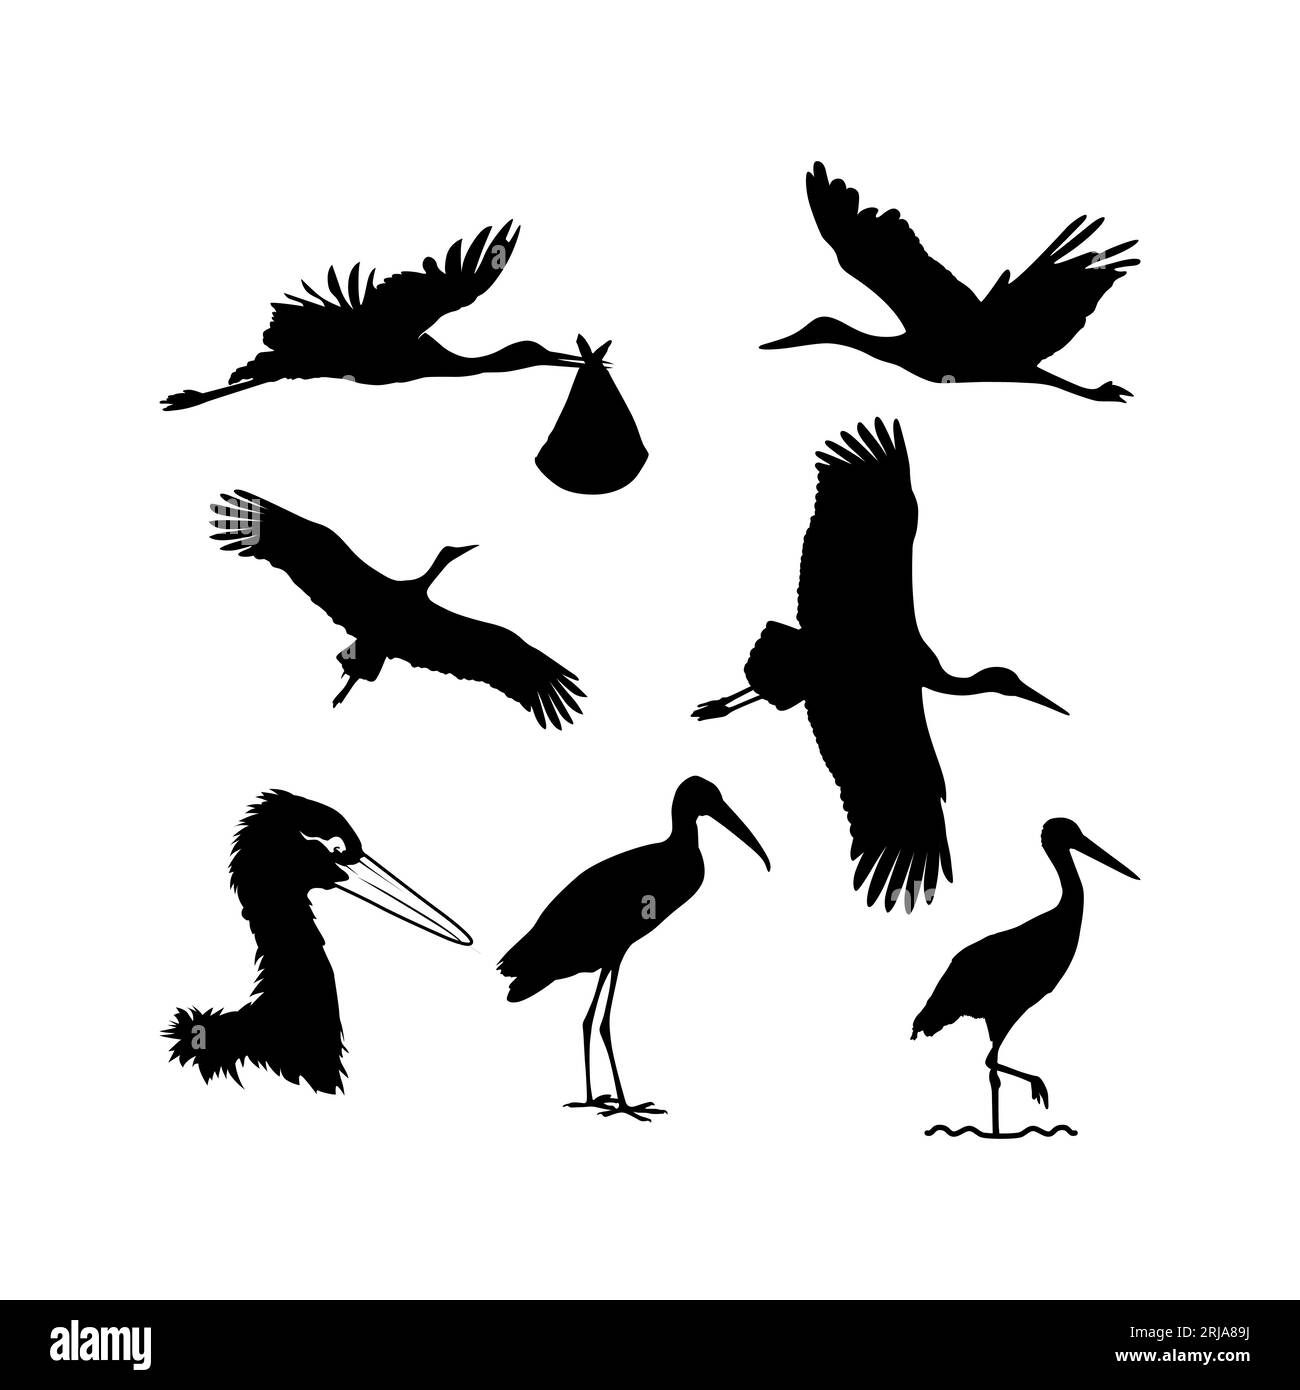 stork silhouette set design inspiration Stock Vector